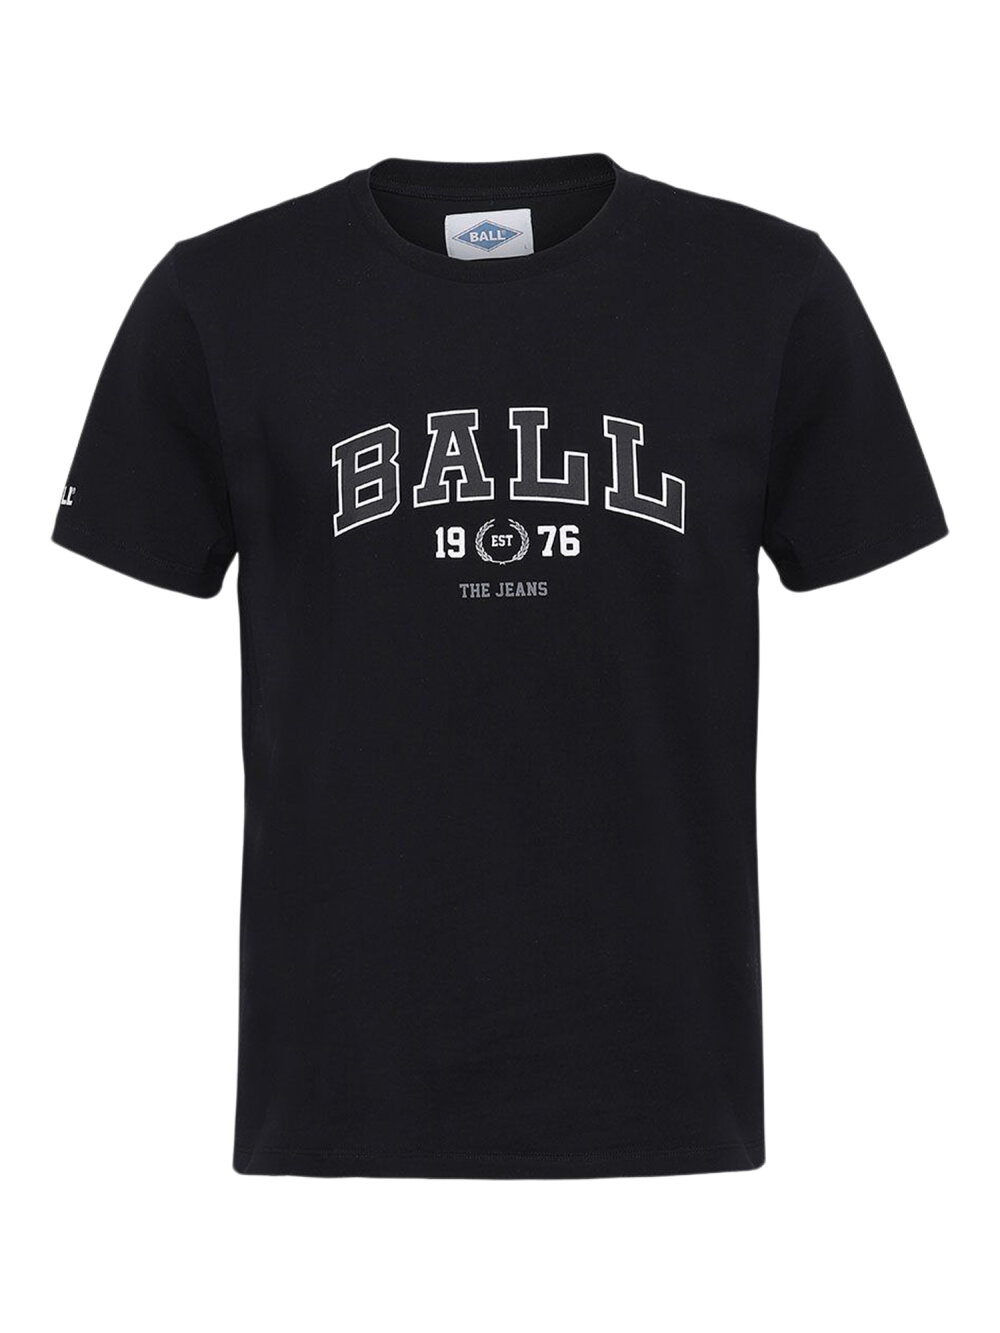 Ball - Elway White T-Shirt